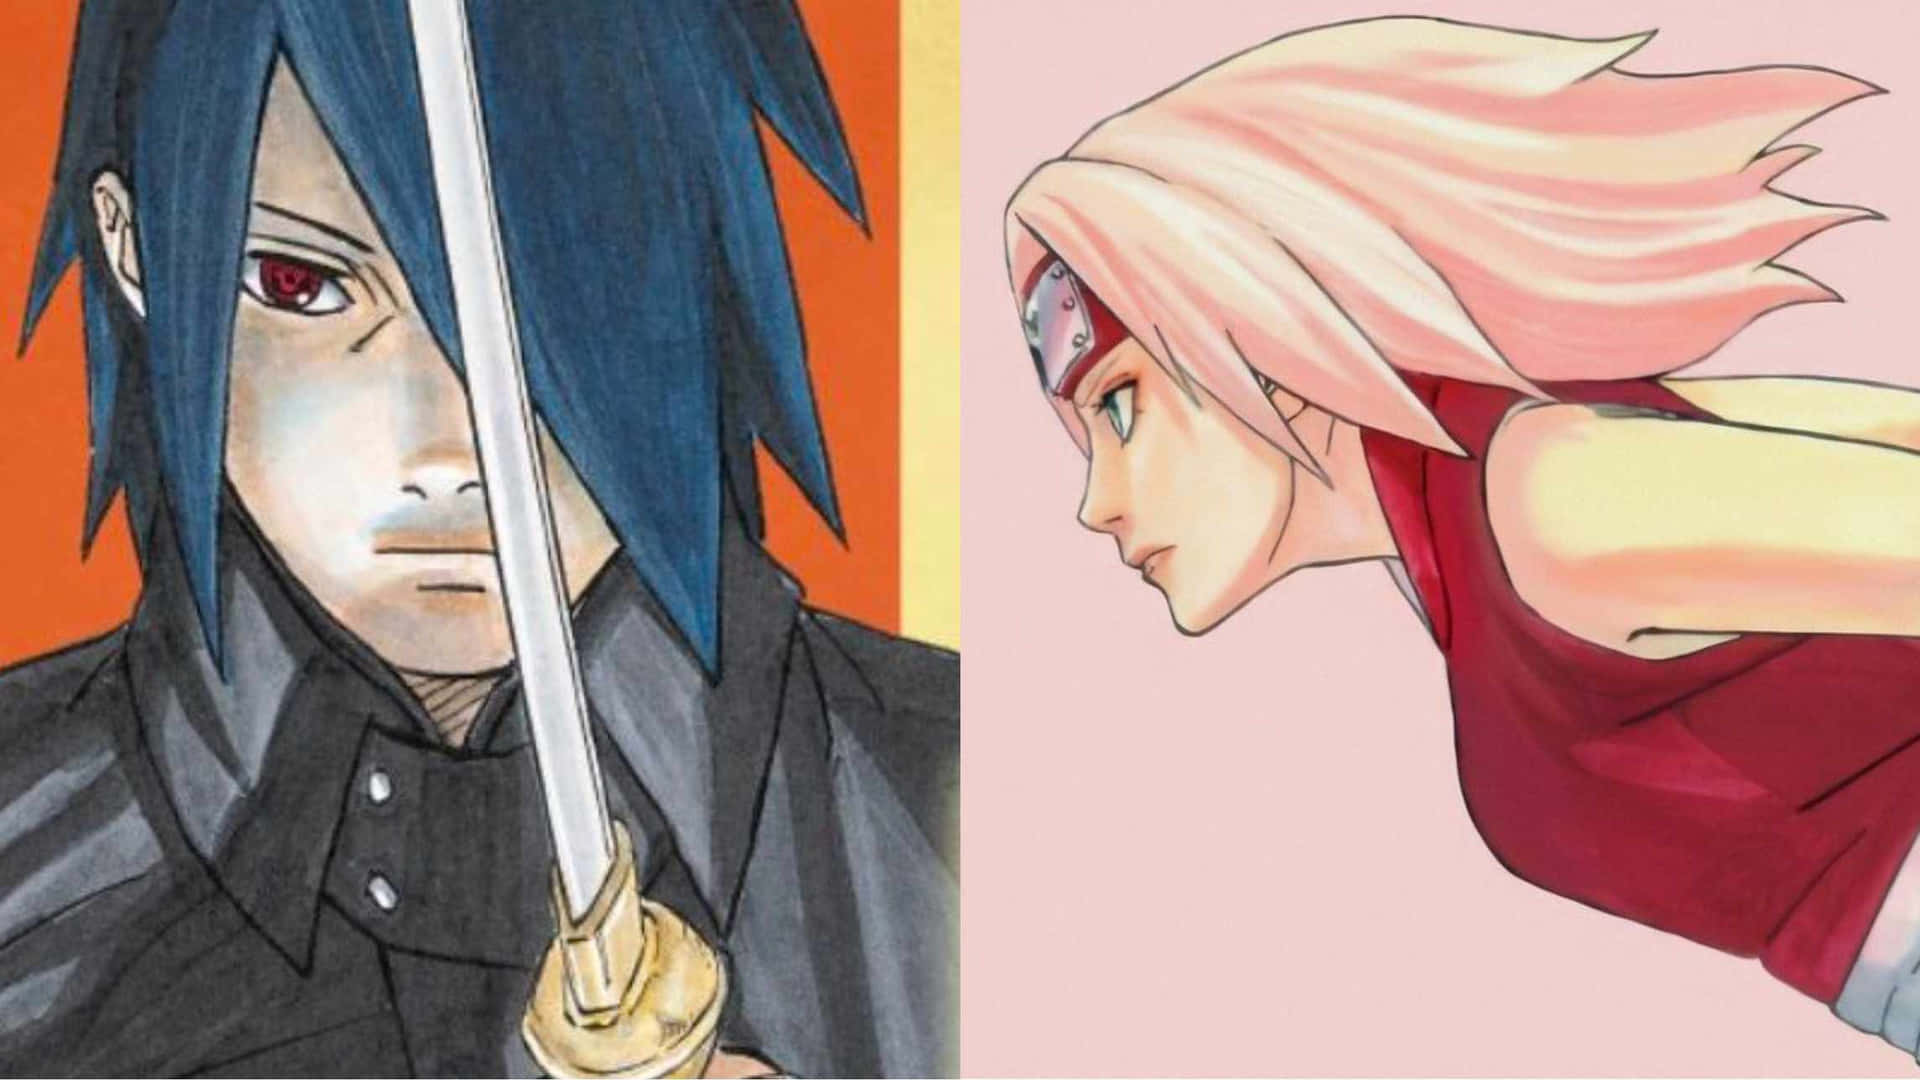 Sasuke Uchiha, the ninja and main protagonist of the Japanese manga series, Naruto.